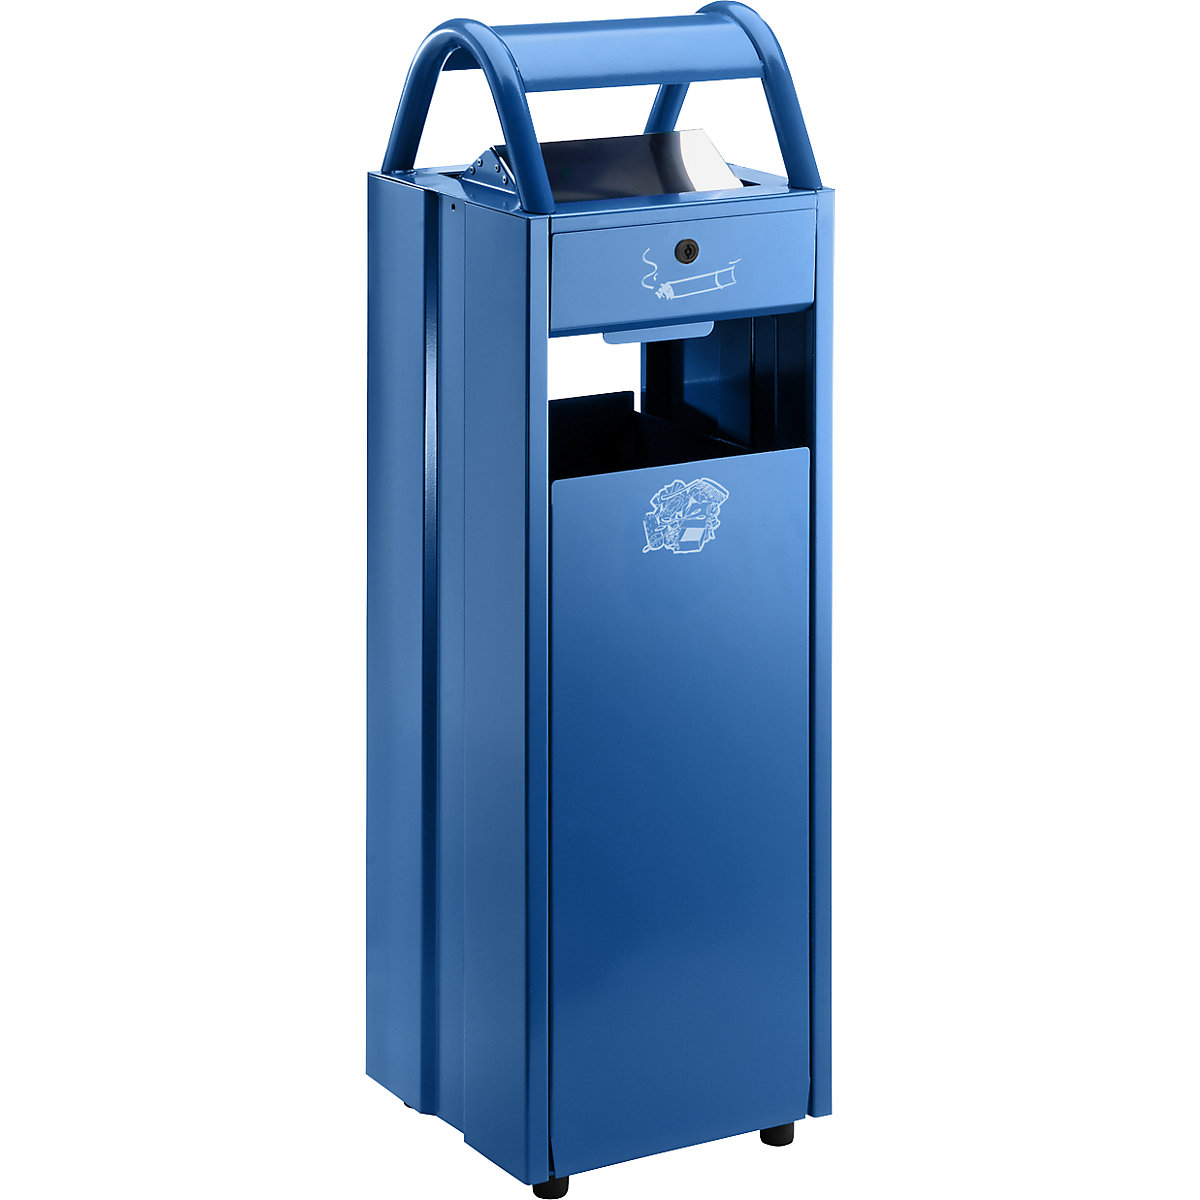 Collecteur de déchets avec cendrier et toit de protection – VAR, capacité 35 l, l x h x p 300 x 960 x 250 mm, bleu gentiane RAL 5010-7